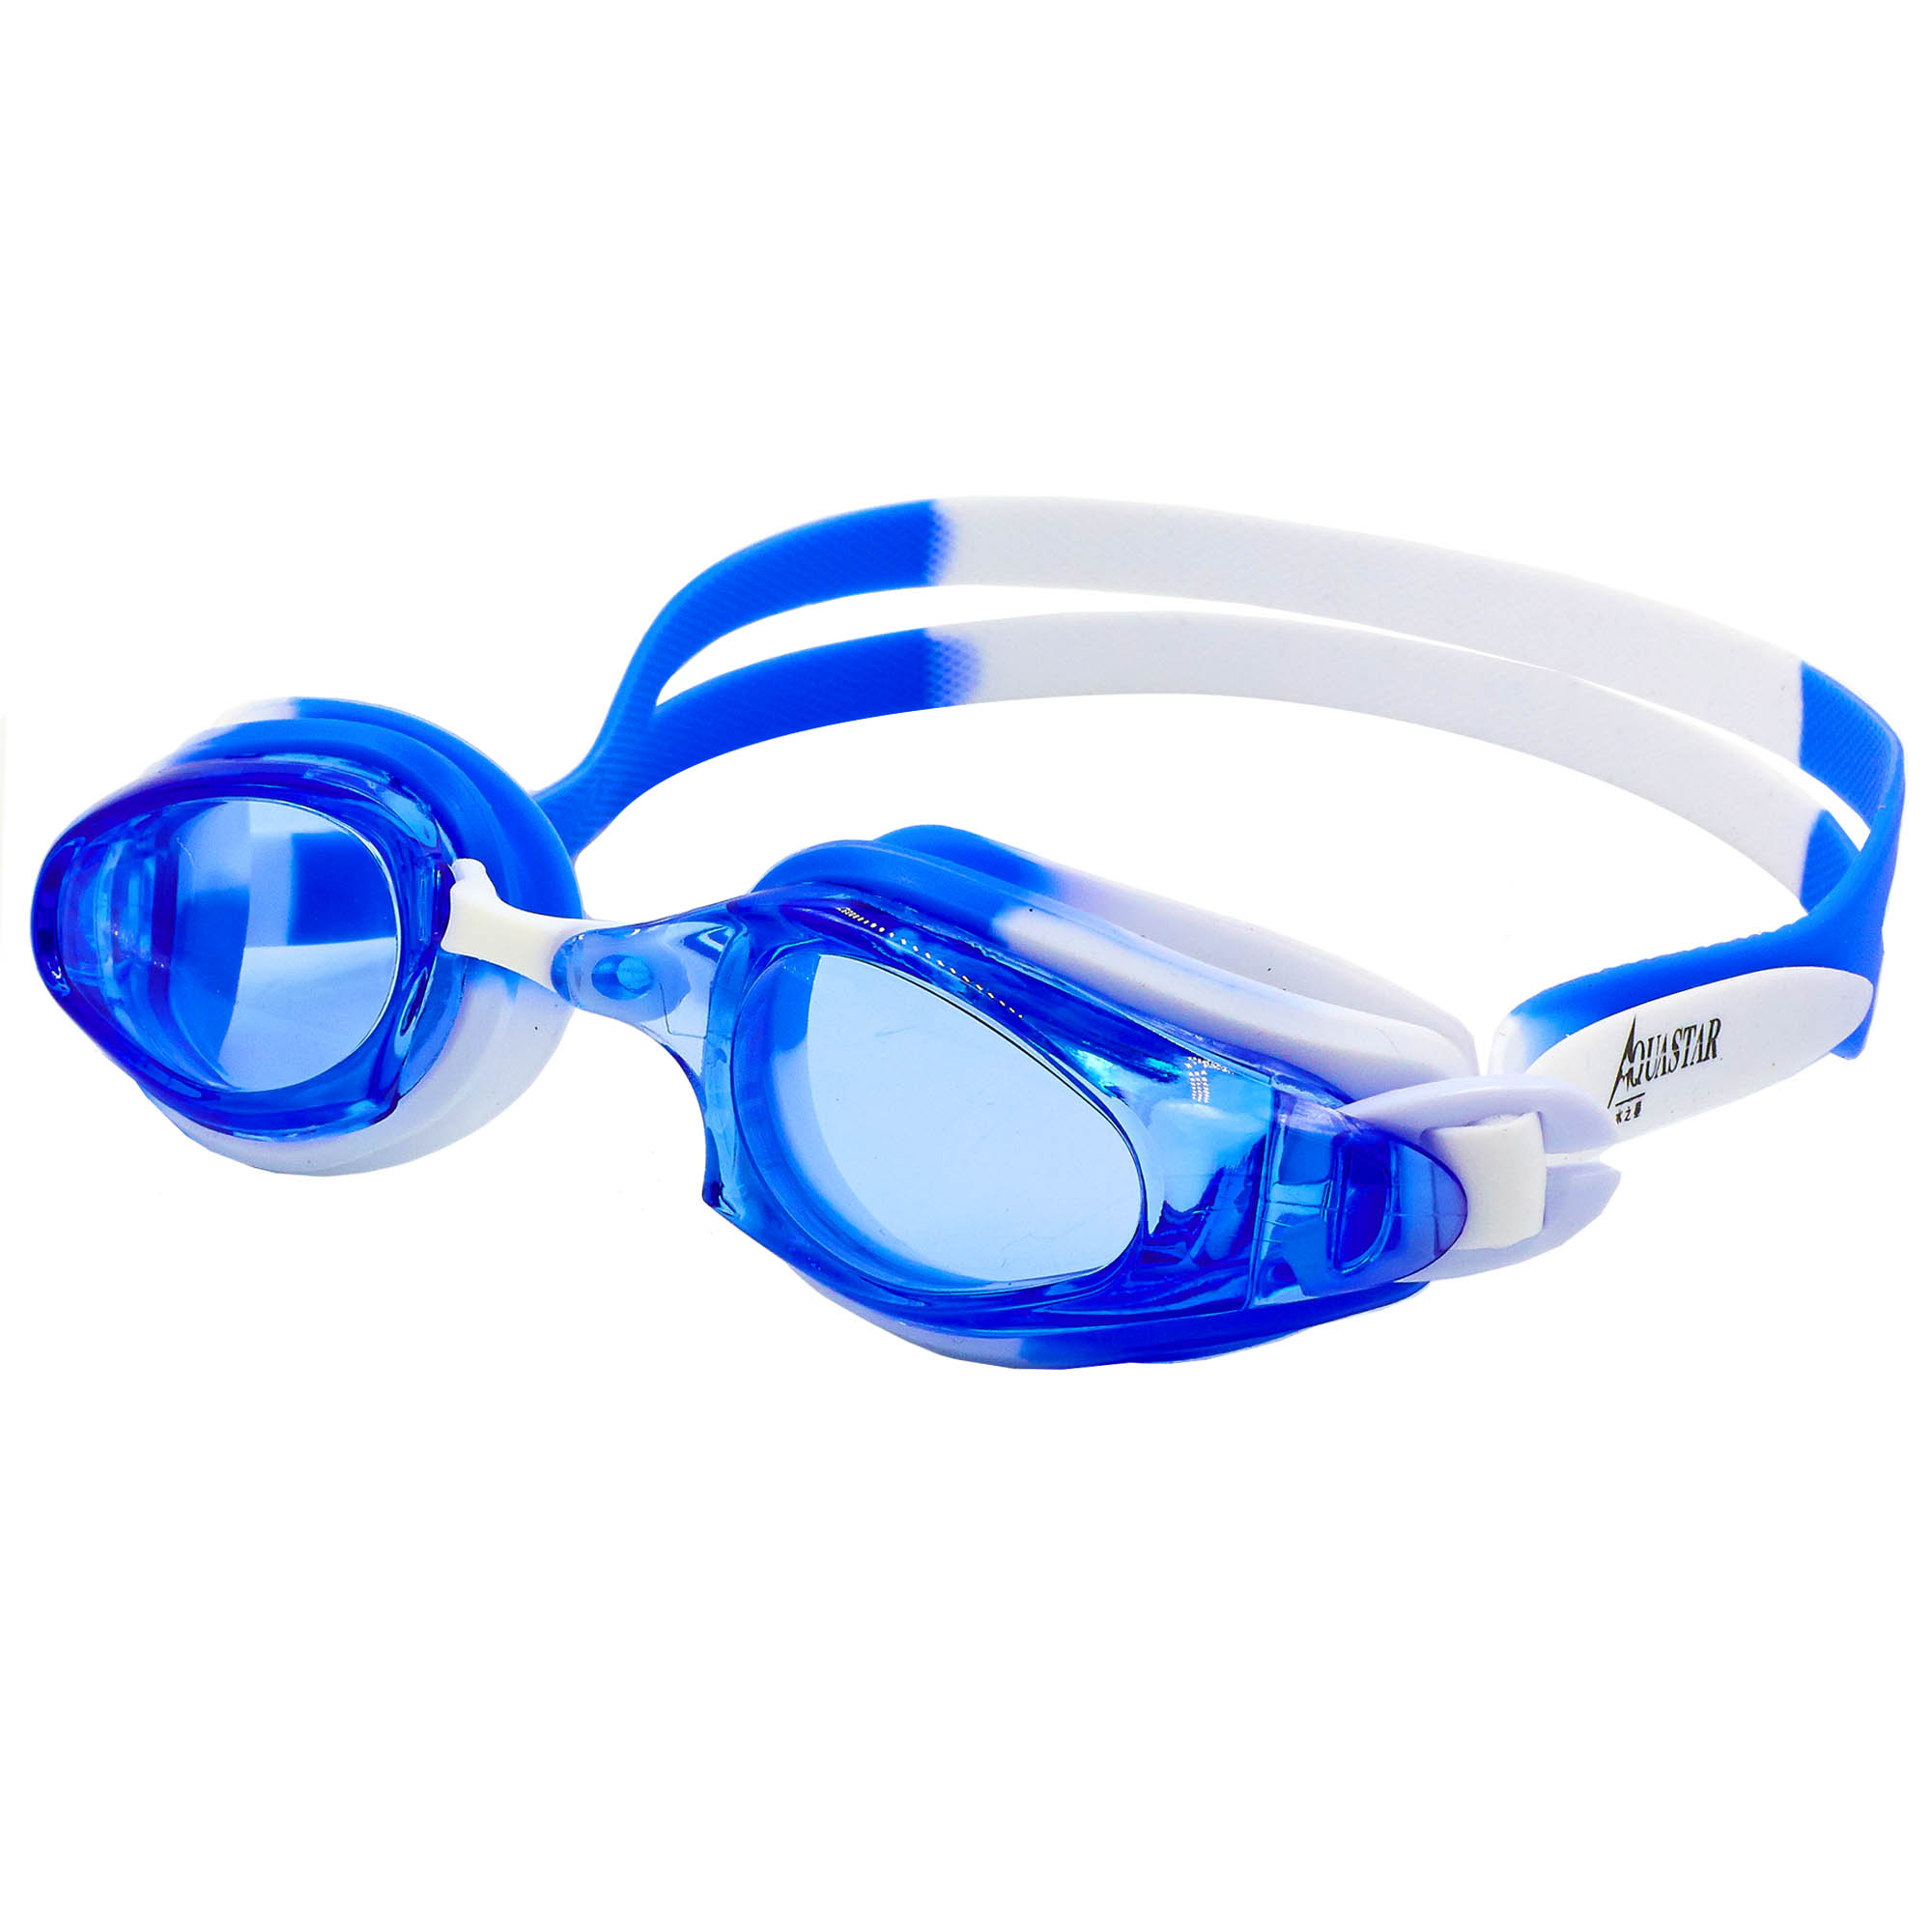 Окуляри для плавання Aquastar 313 Синьо-білий